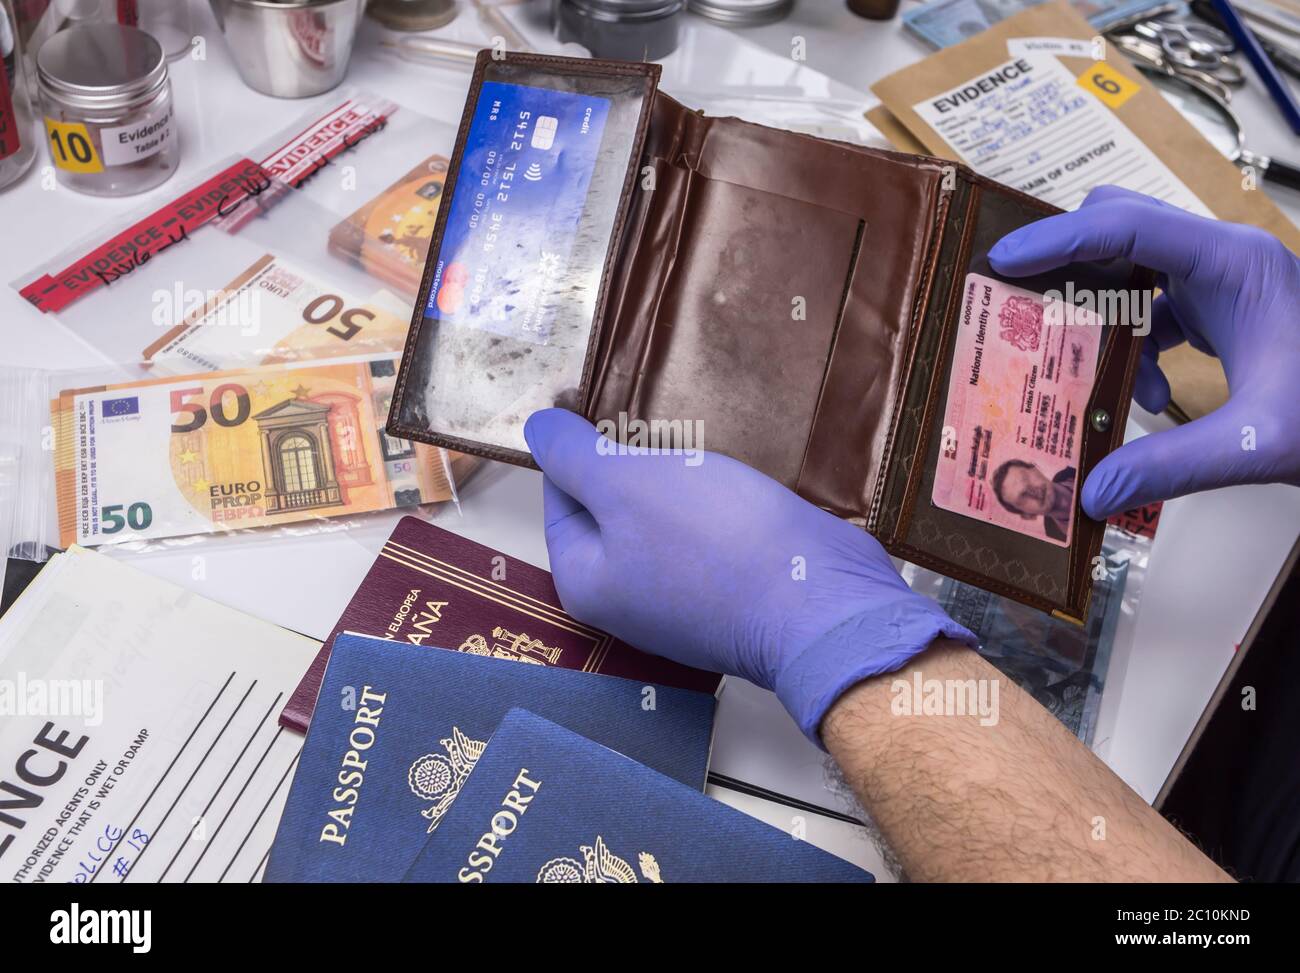 Esperto di polizia esaminando passaporto americano e portamonete di una busta di prova nel laboratorio criminalistic, immagine concettuale Foto Stock